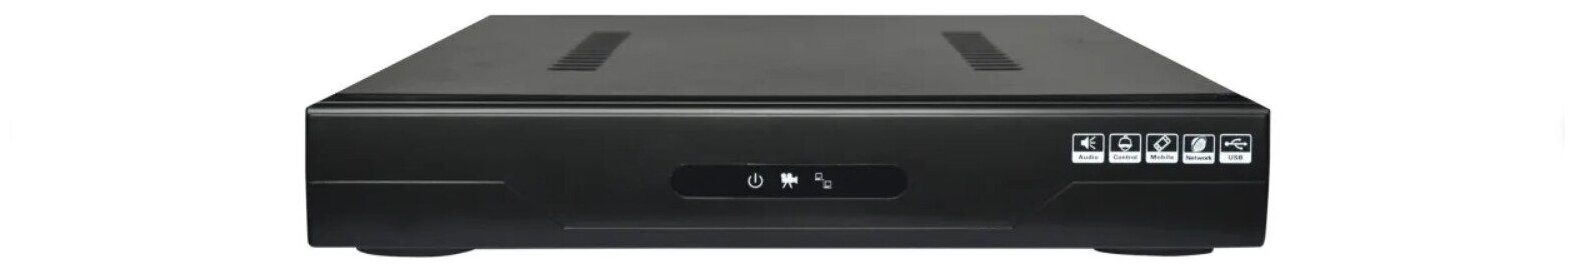 Видеорегистратор AltCam DVR413 4-ми канальный 5 в 1 (AHD+TVI+CVI+IP+CVBS)